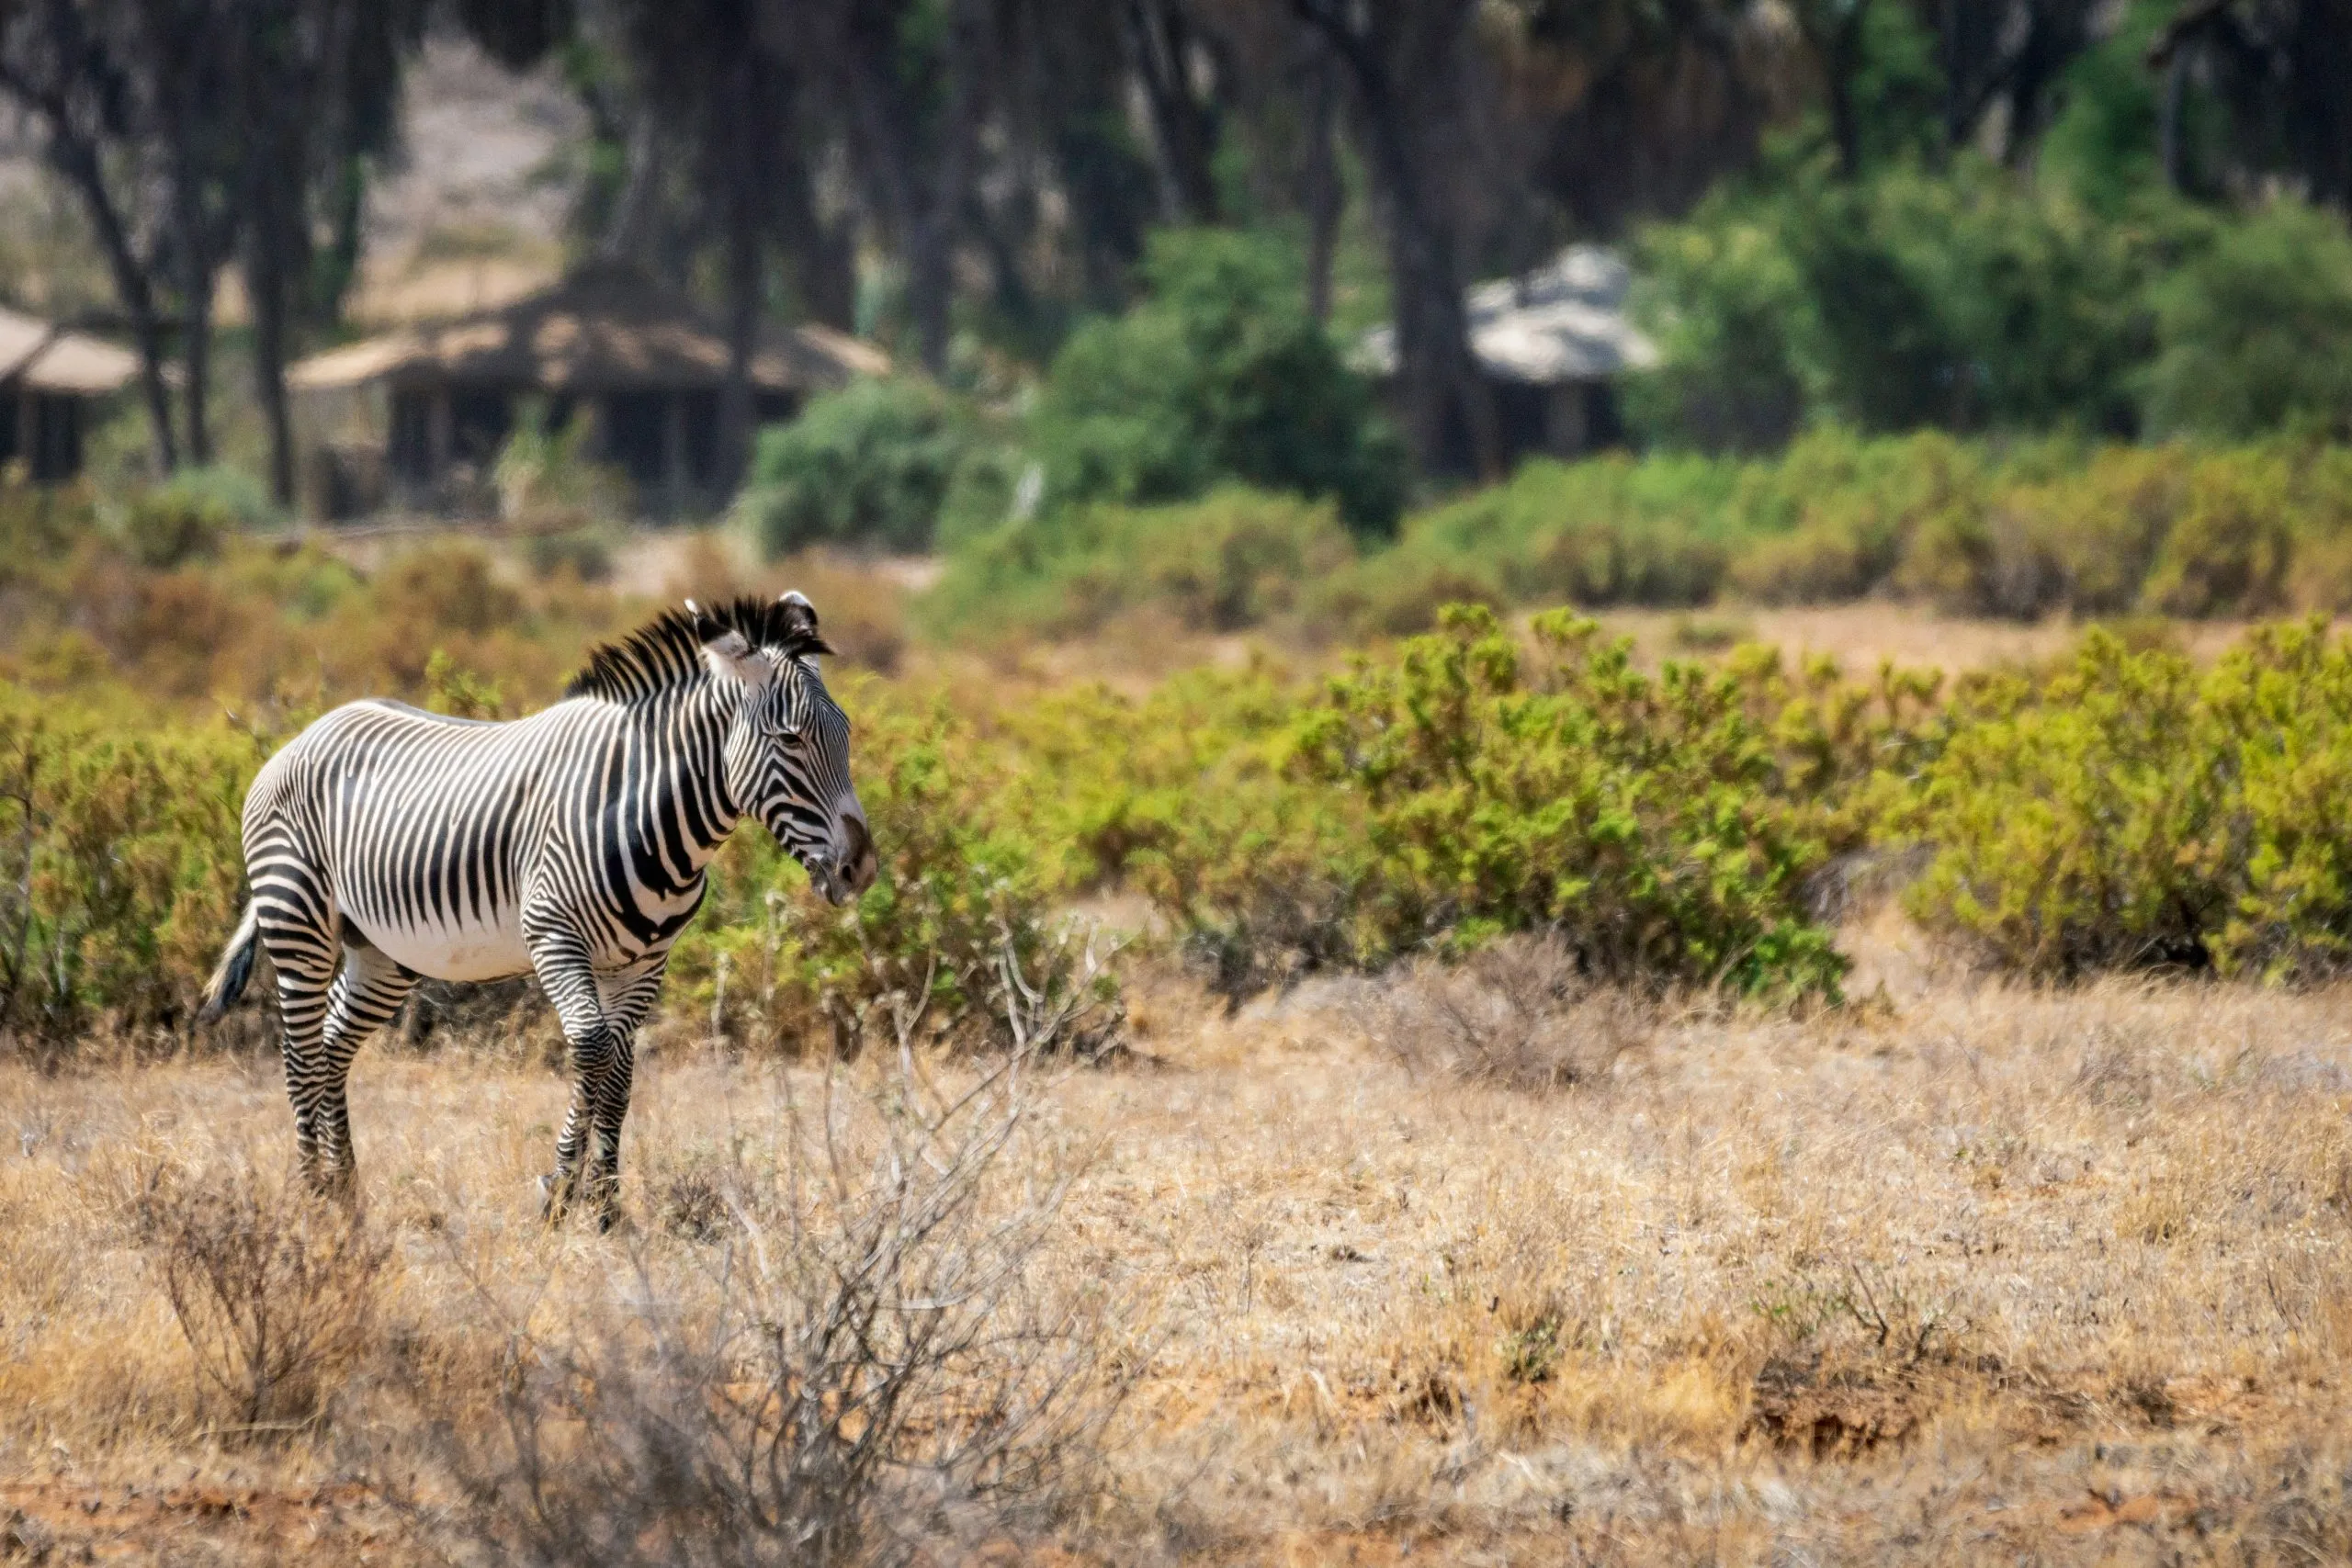 Grevys zebra o Imperial zebra all'aperto nella natura selvaggia africana nel parco nazionale di Samburu in Kenya. Safari, fauna selvatica e concetto di viaggio.